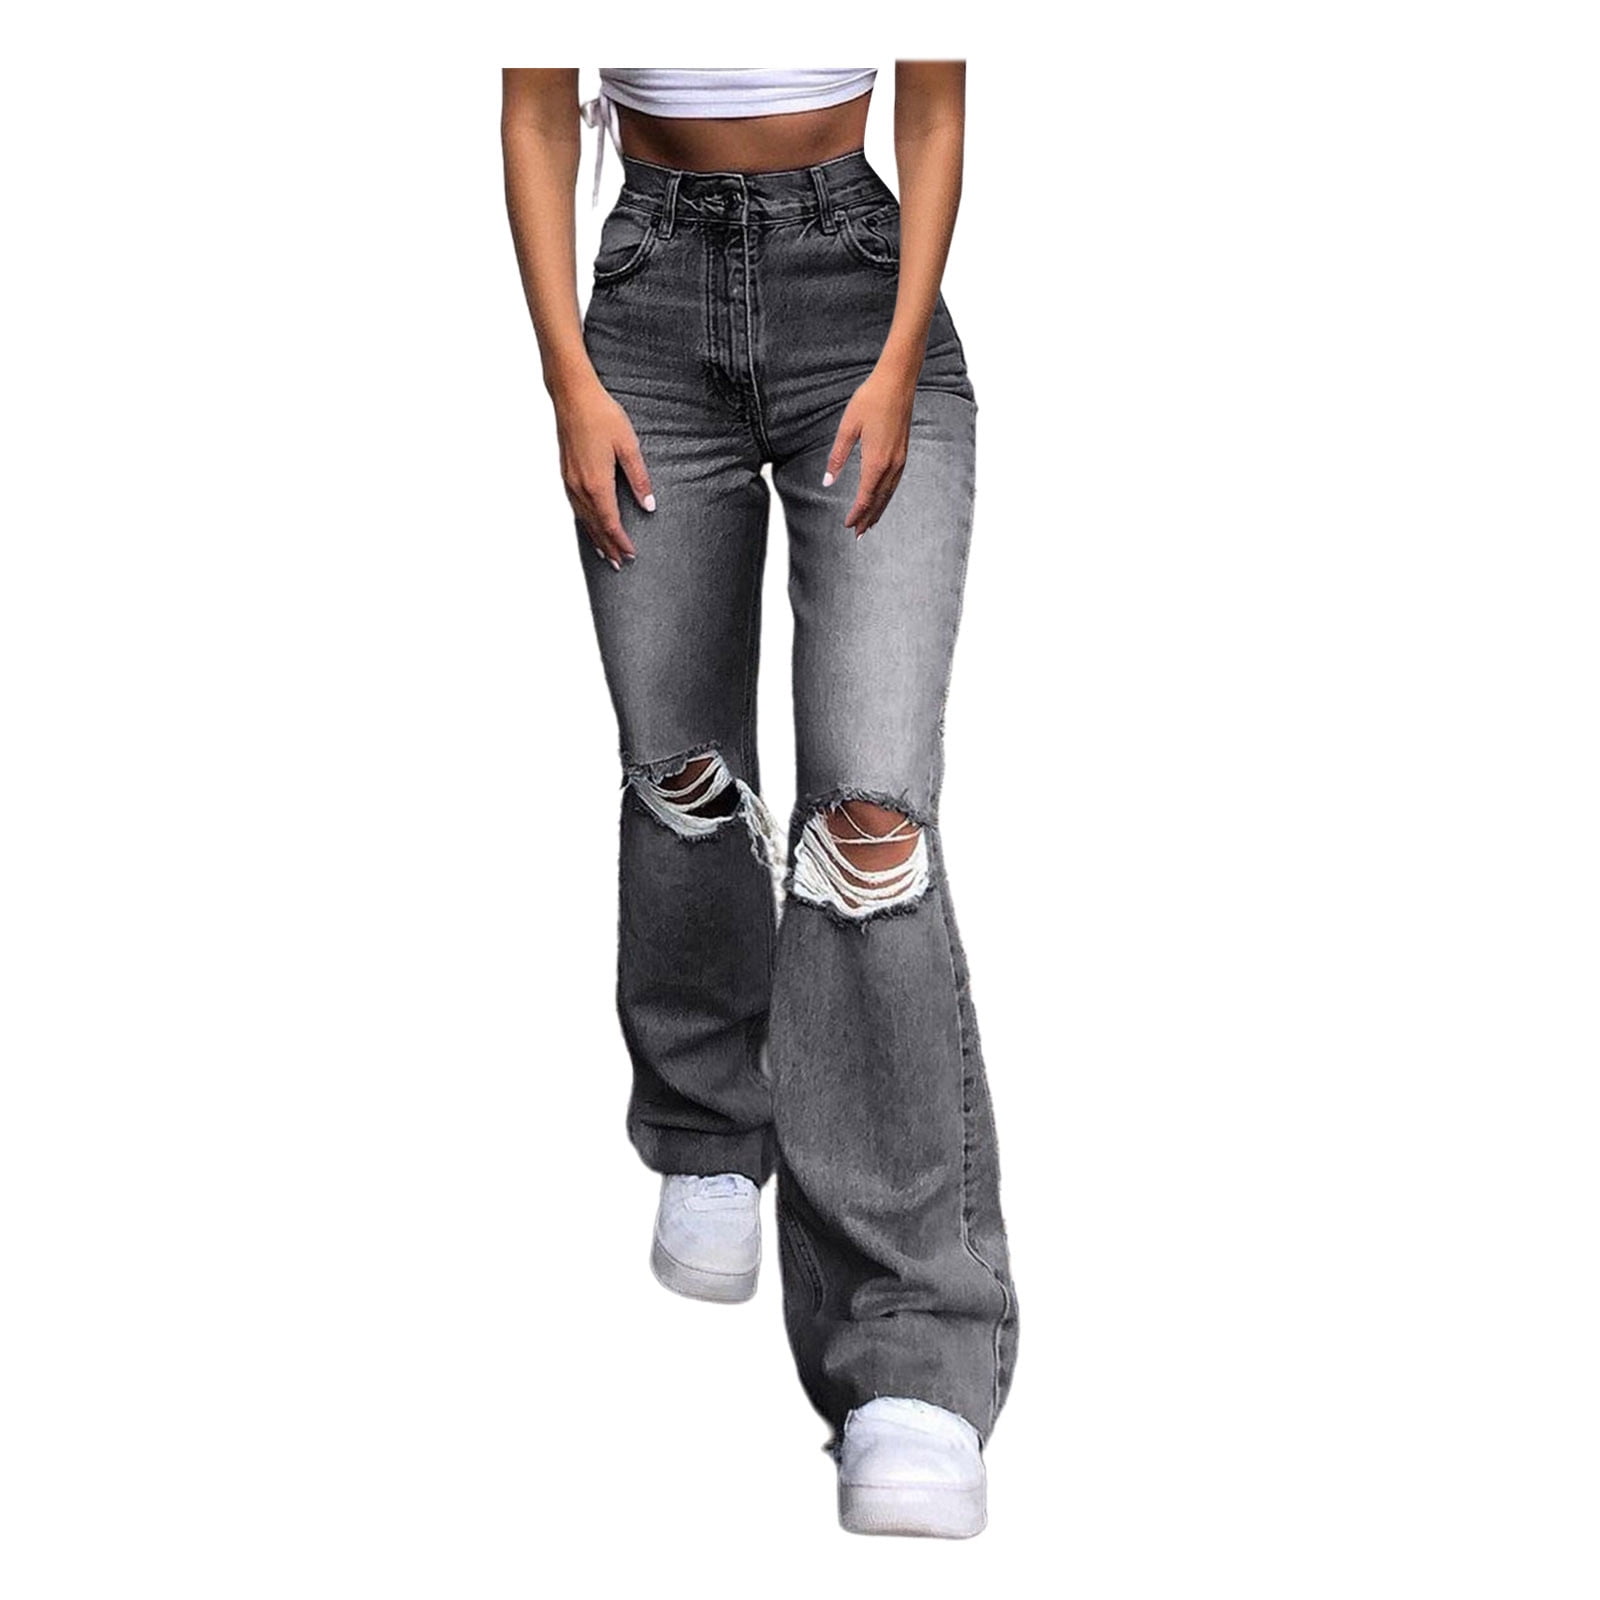 Mrat Full Length Pants Jeans Women's Sweatpants Ladies Button High